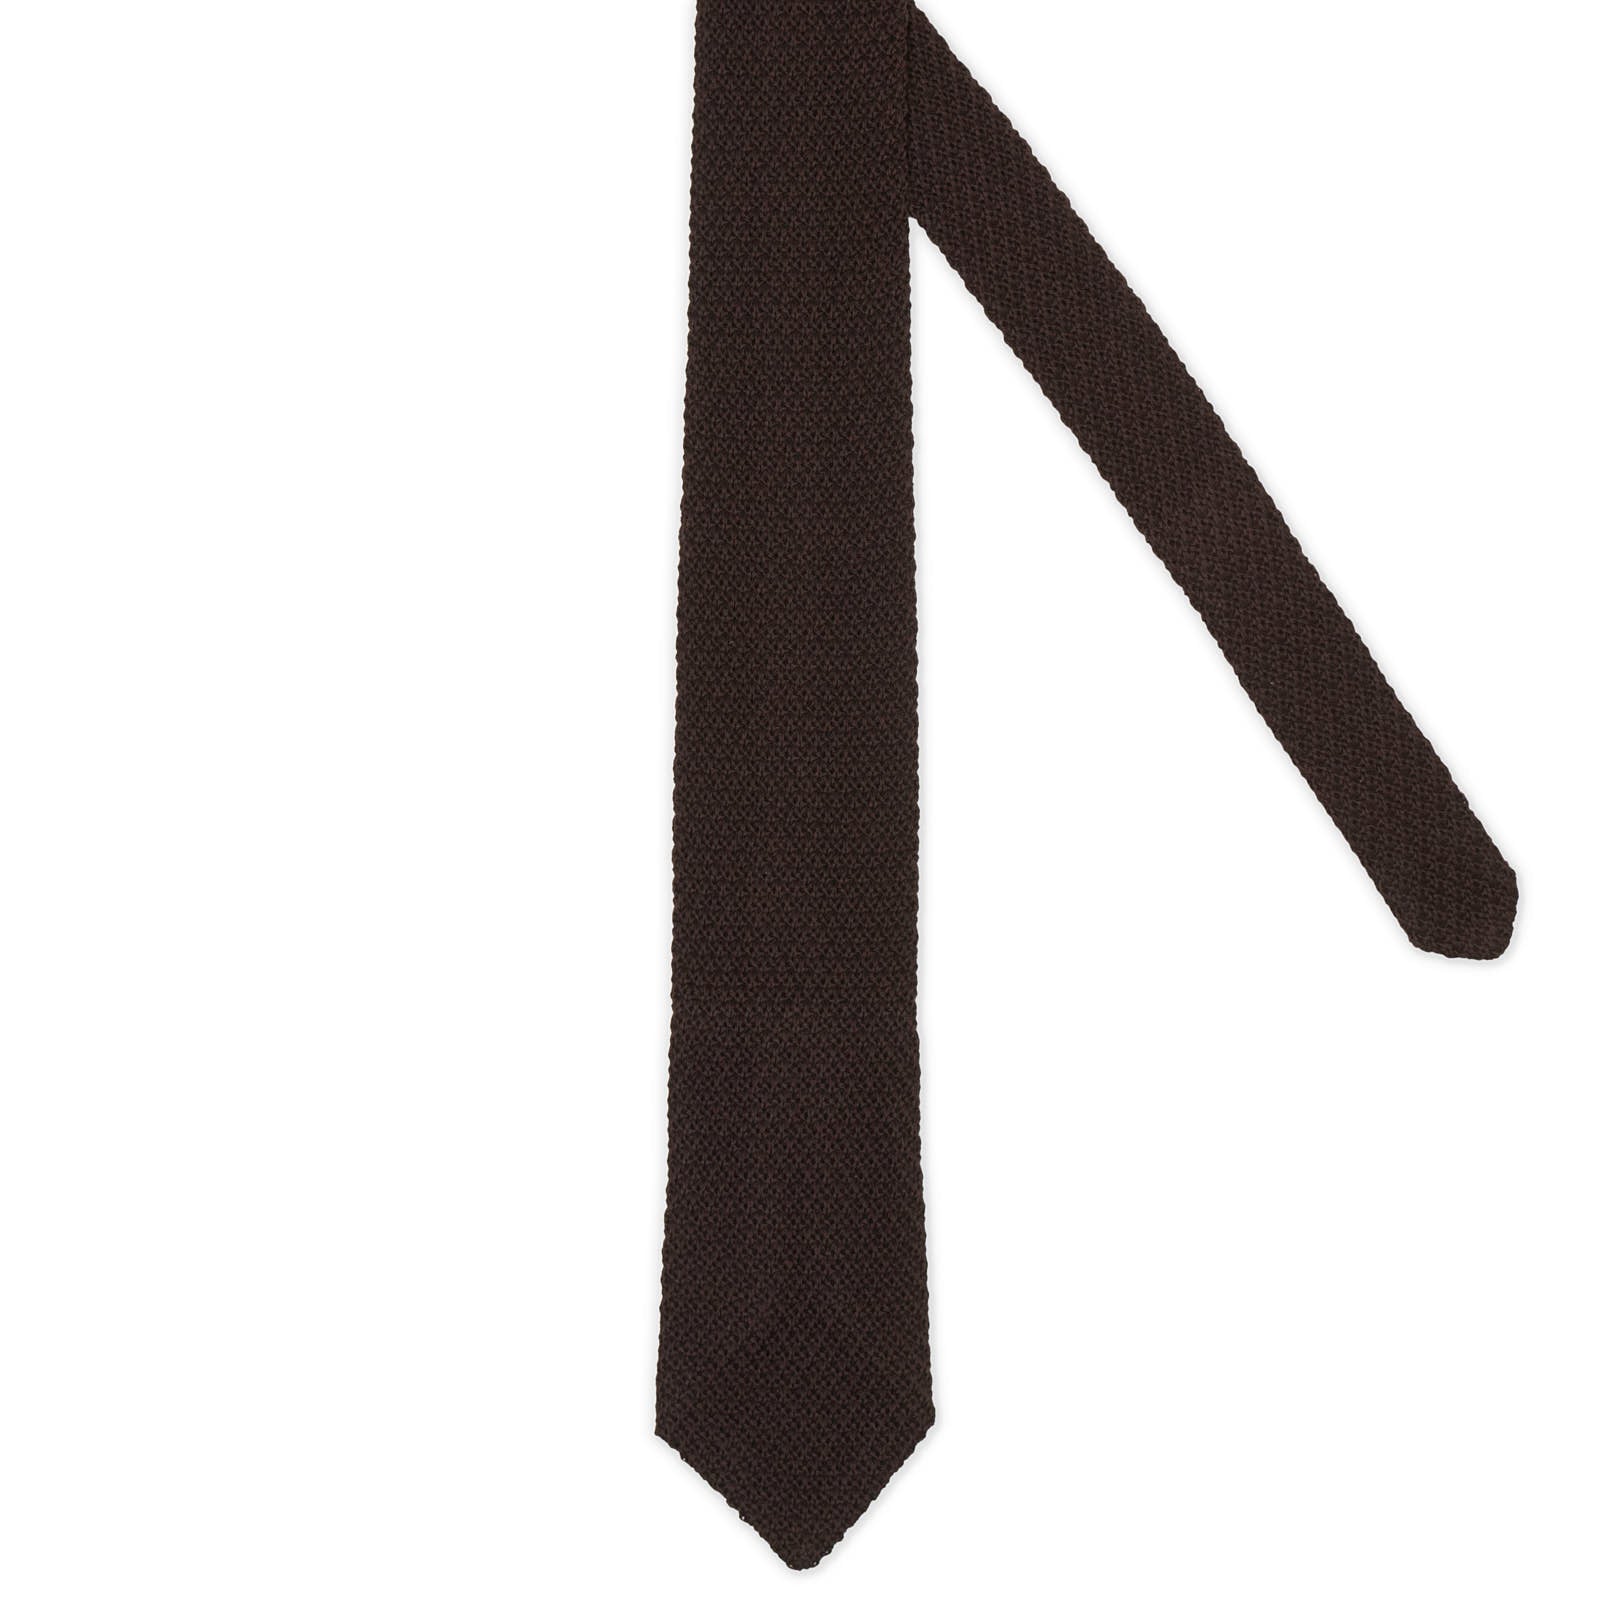 VANNUCCI MILANO Dark Brown Cotton Knit Tie NEW